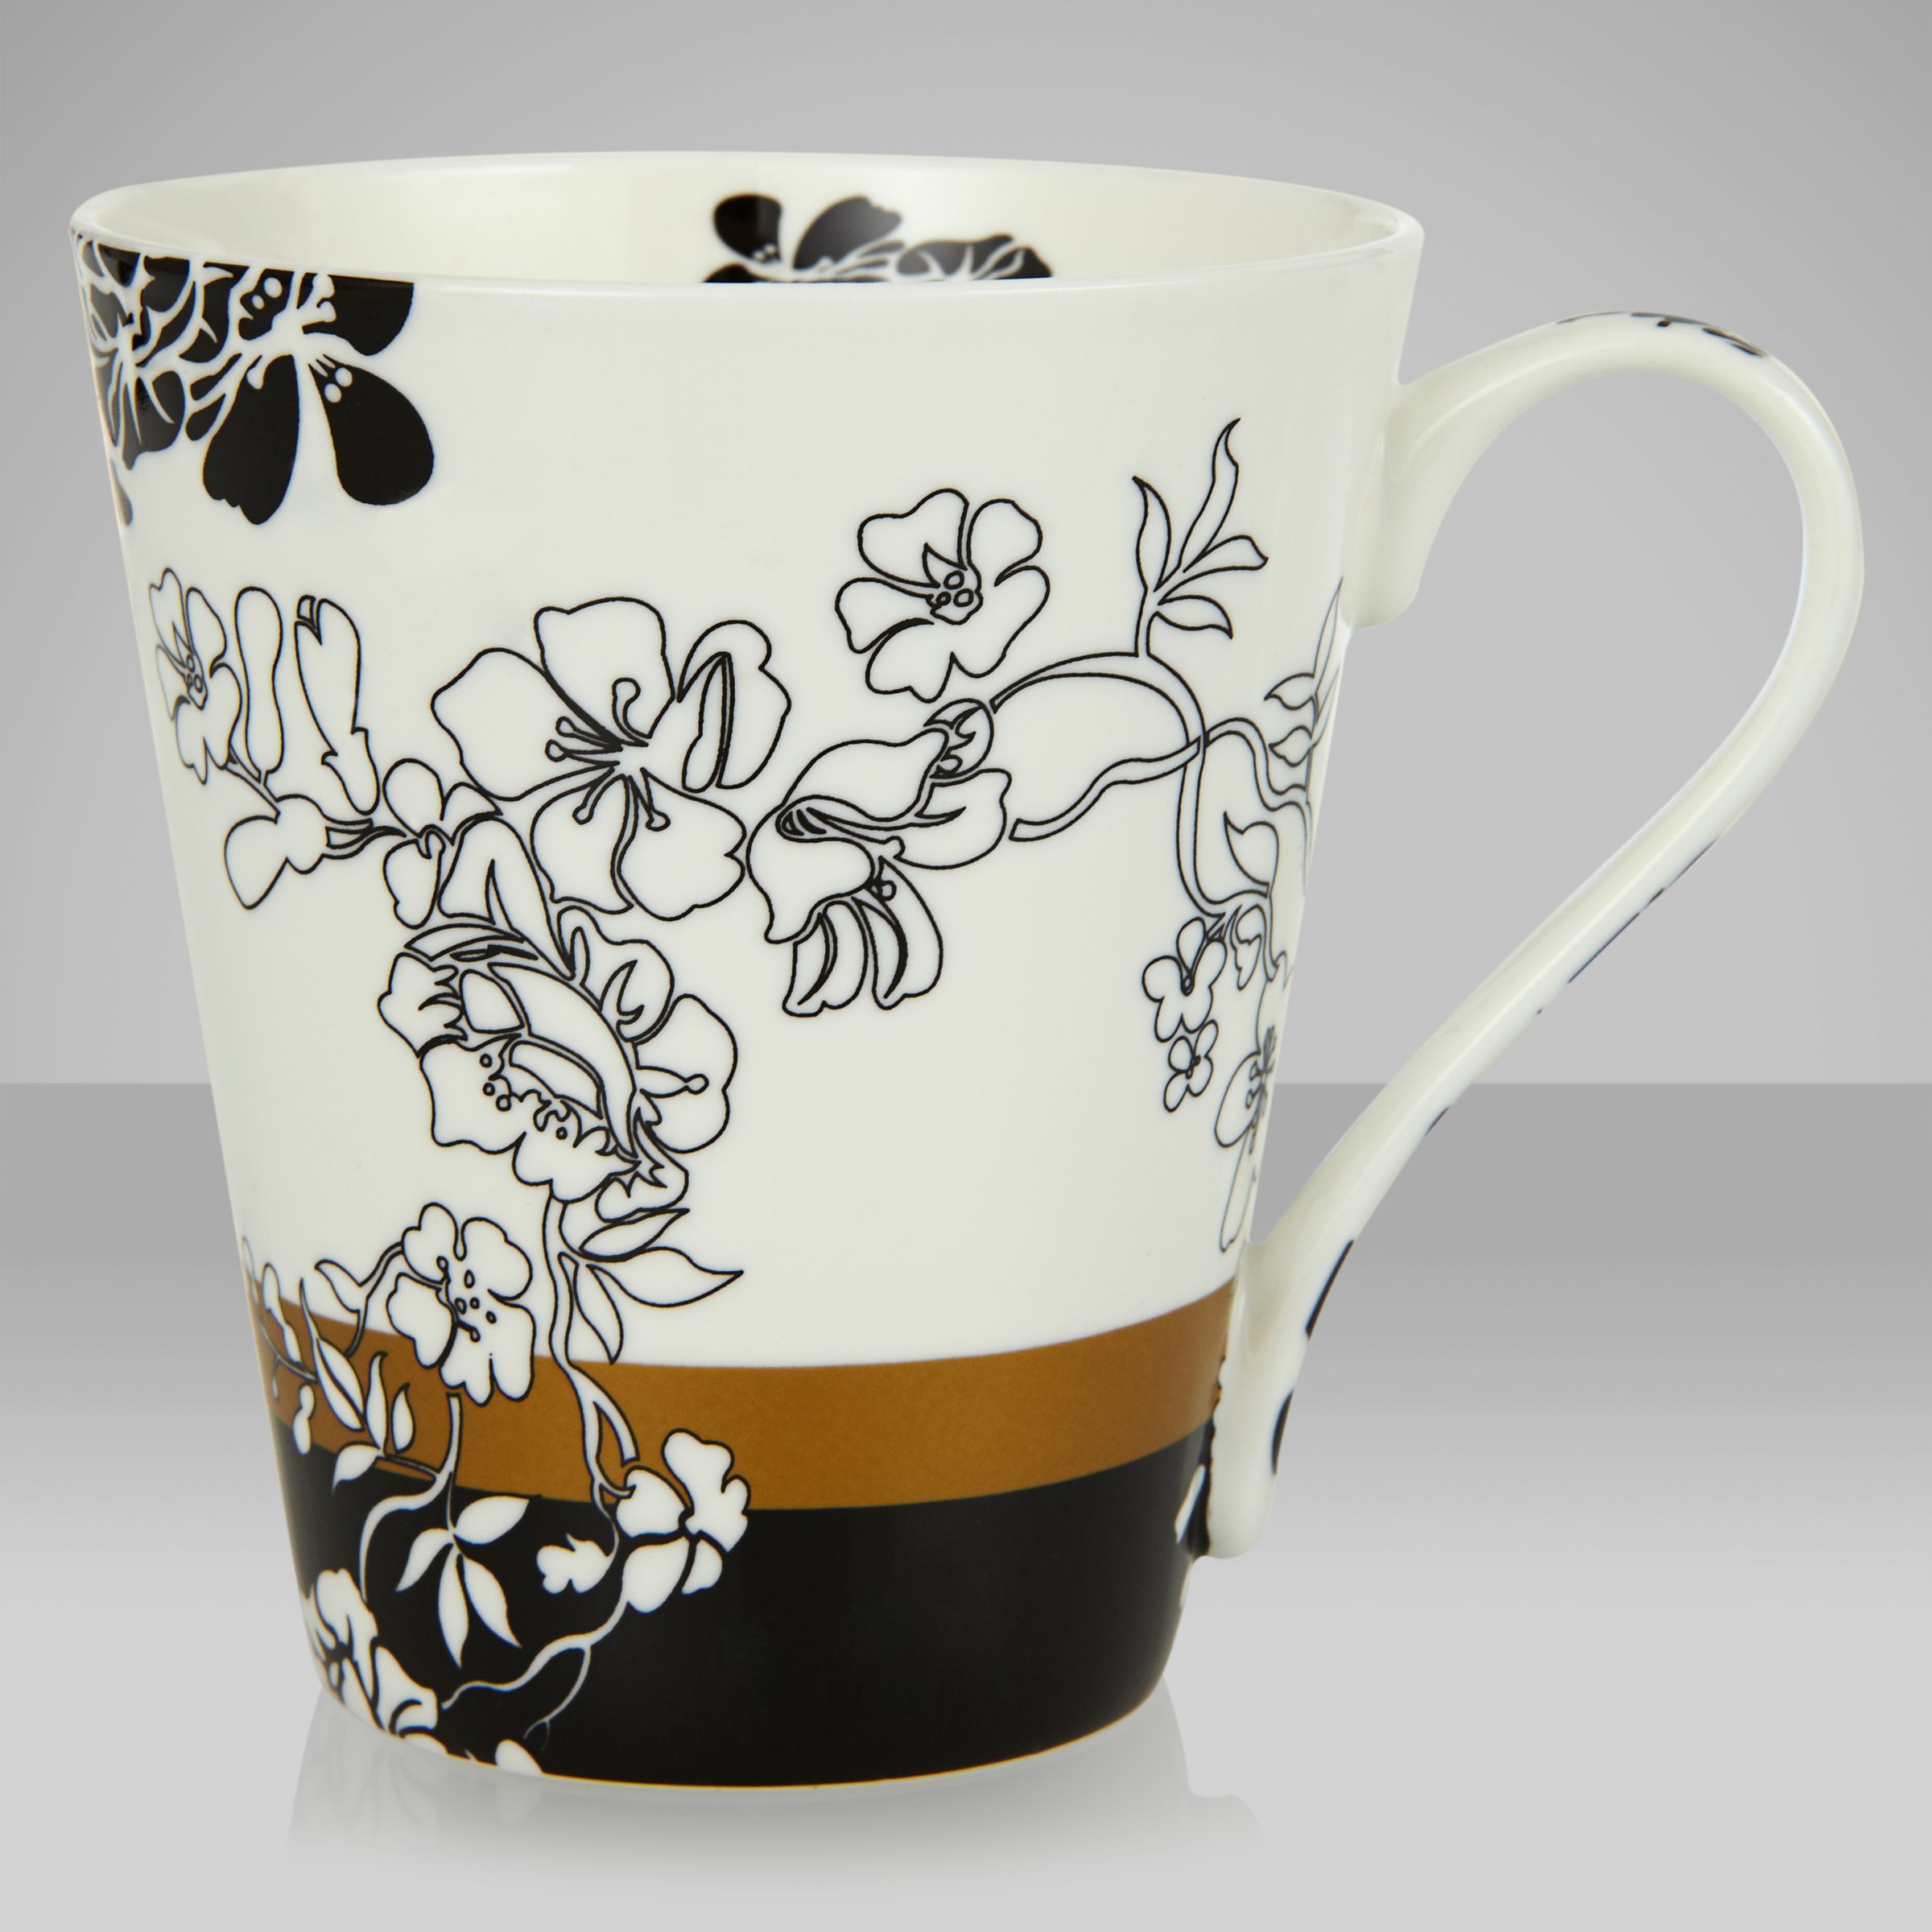 V&A VandA Brocade Mug, Black/White 230491953